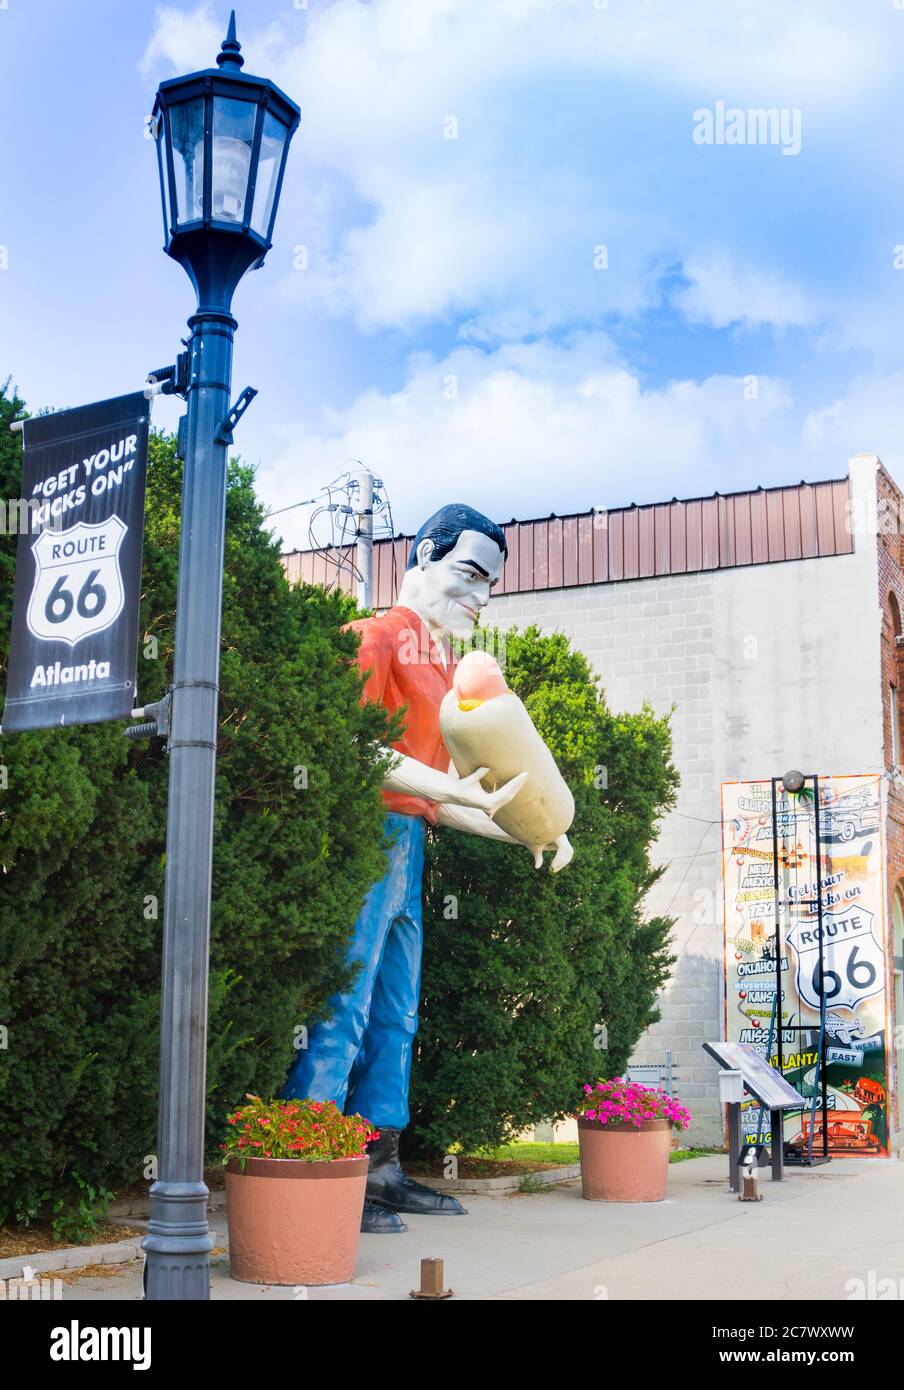 Atlanta USA August 31 2015; Statue Bunyon Muffler Mann hält gaint Hotdog in Atlanta, Illinois, USA, neben Schild Holen Sie sich Ihre Kicks auf Route 66. Stockfoto